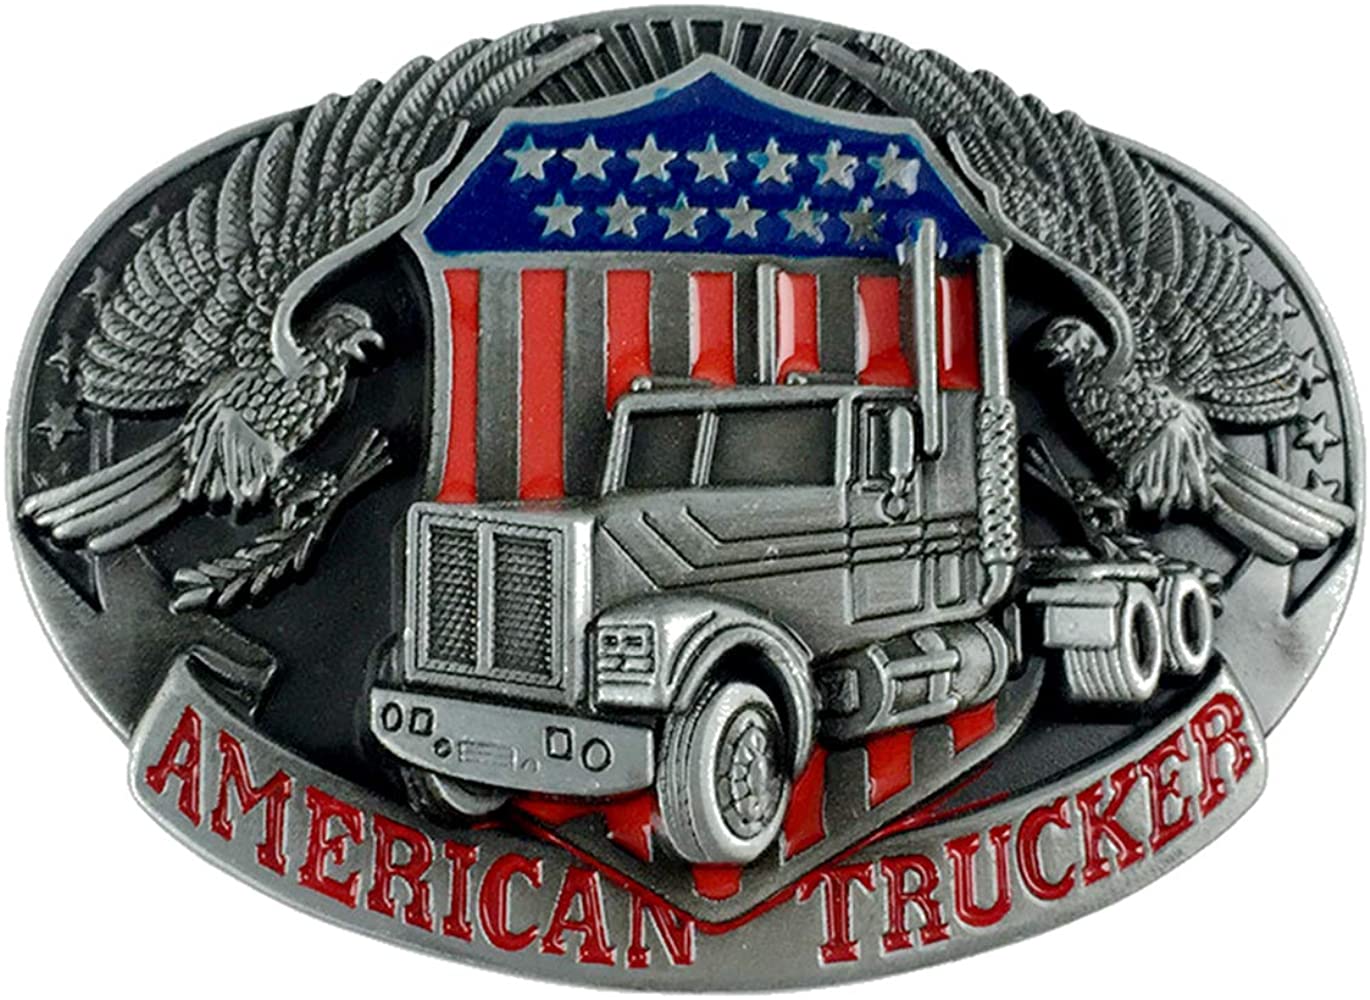 TBB003 American Trucker Belt Buckle